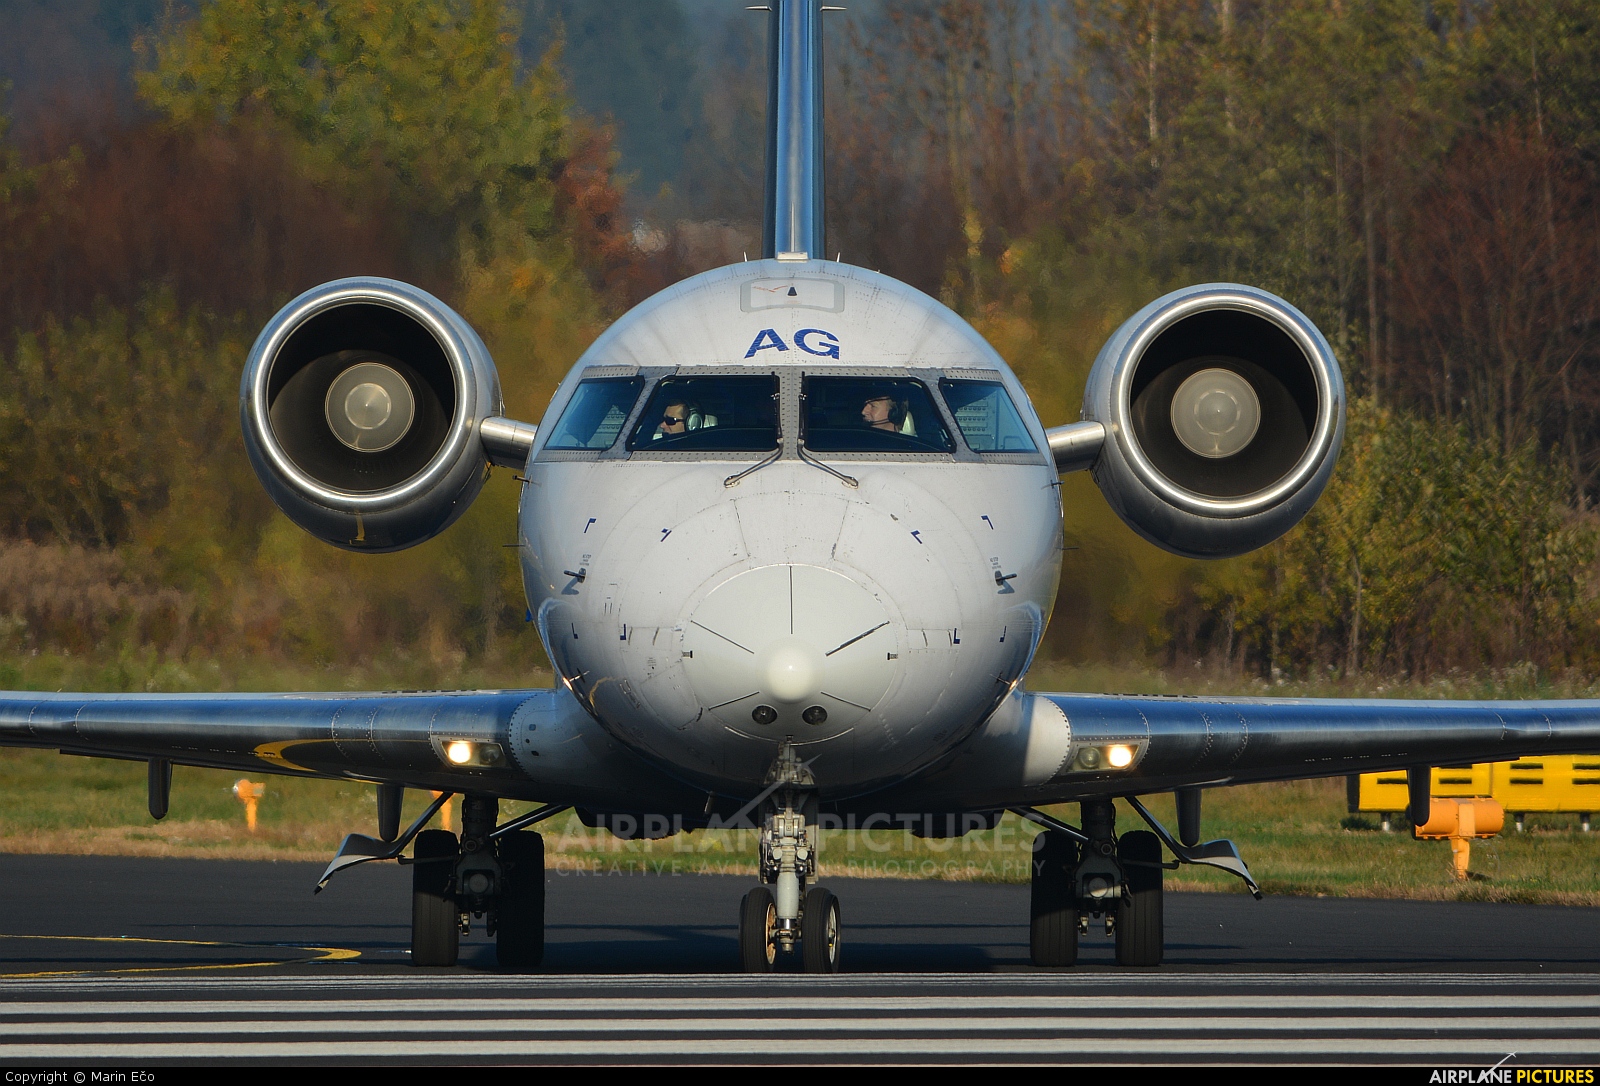 Adria Airways S5-AAG aircraft at Ljubljana - Brnik